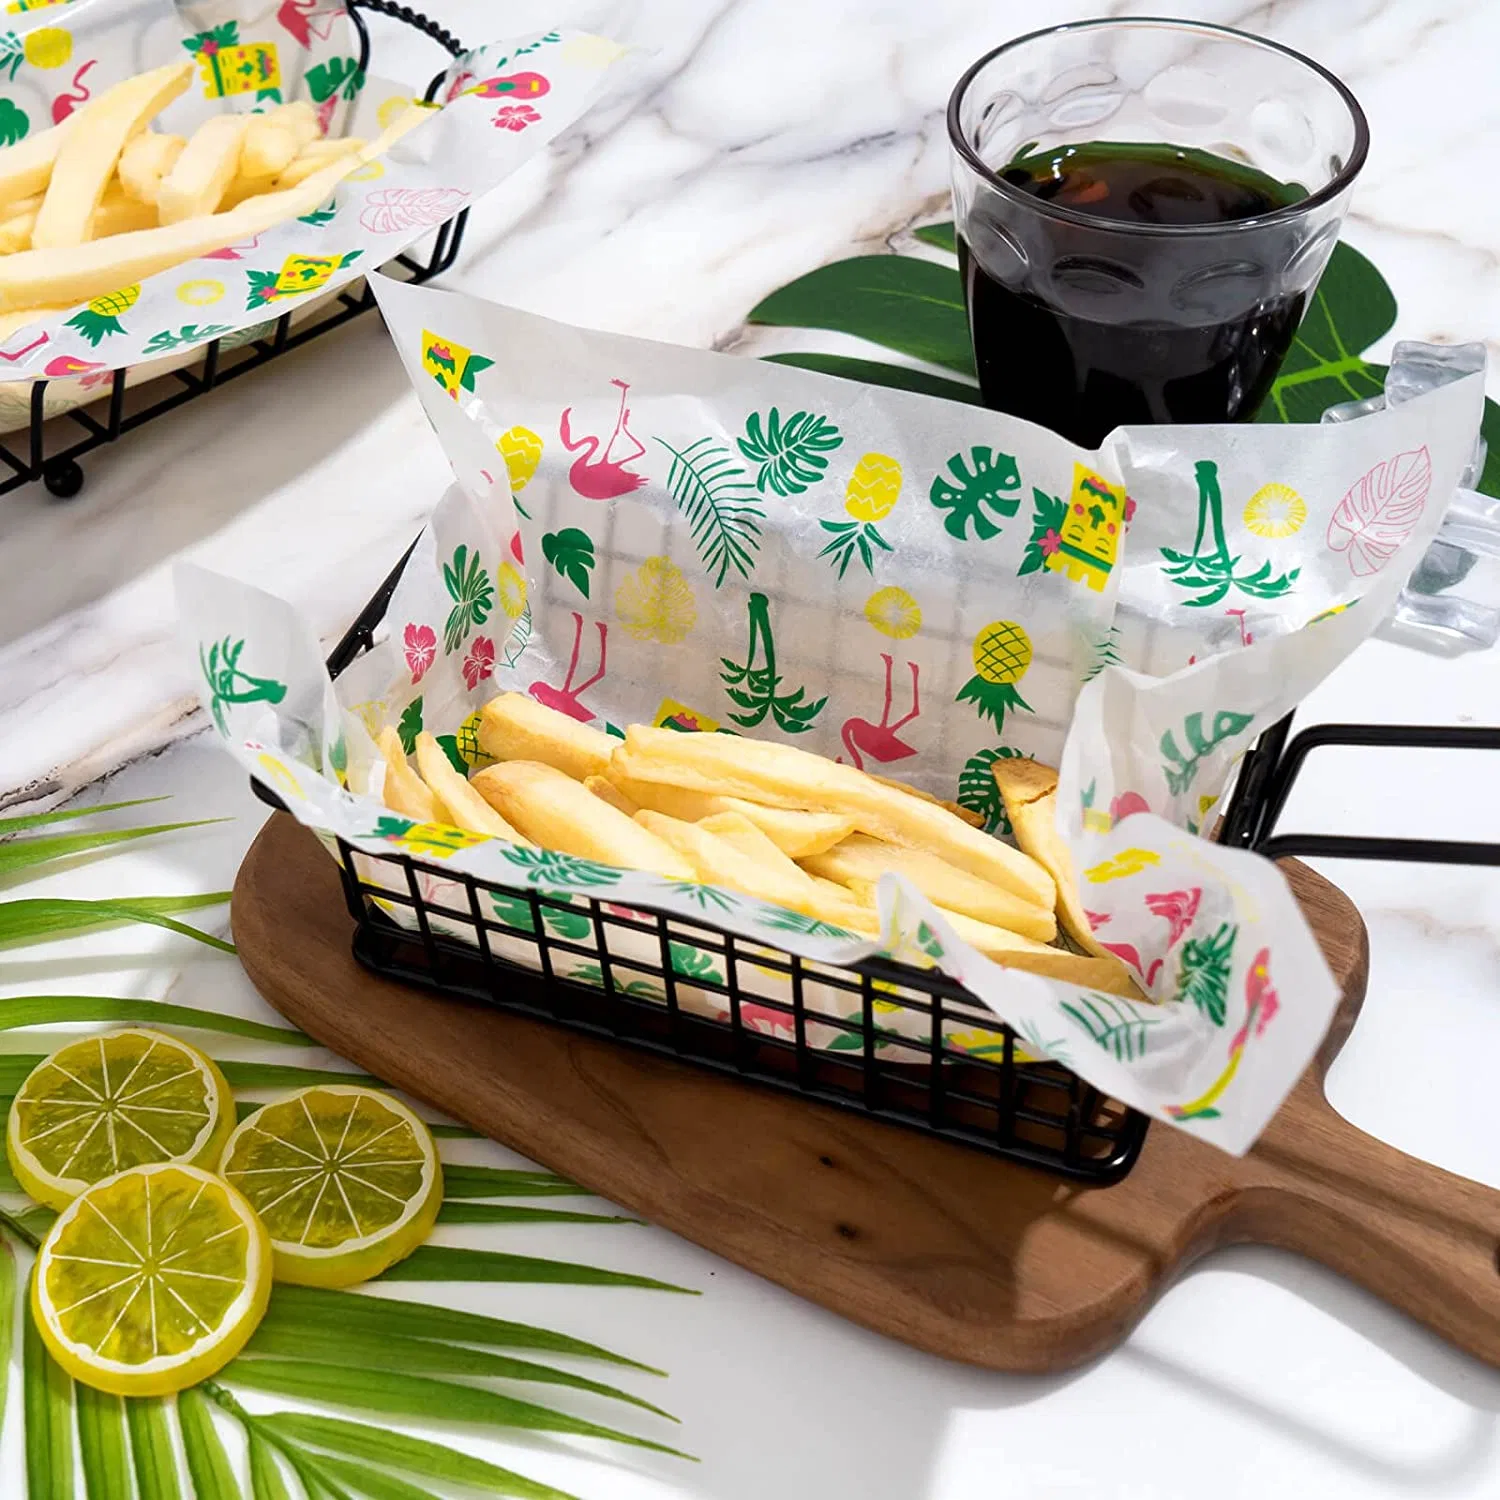 La isla de Hawaii papel encerado, Oil-Proof Deli Sandwich de papel envolturas, Candy Cookie Wrappers, cestas de picnic, cocina alimentos artesanales camisas, papel encerado para la alimentación